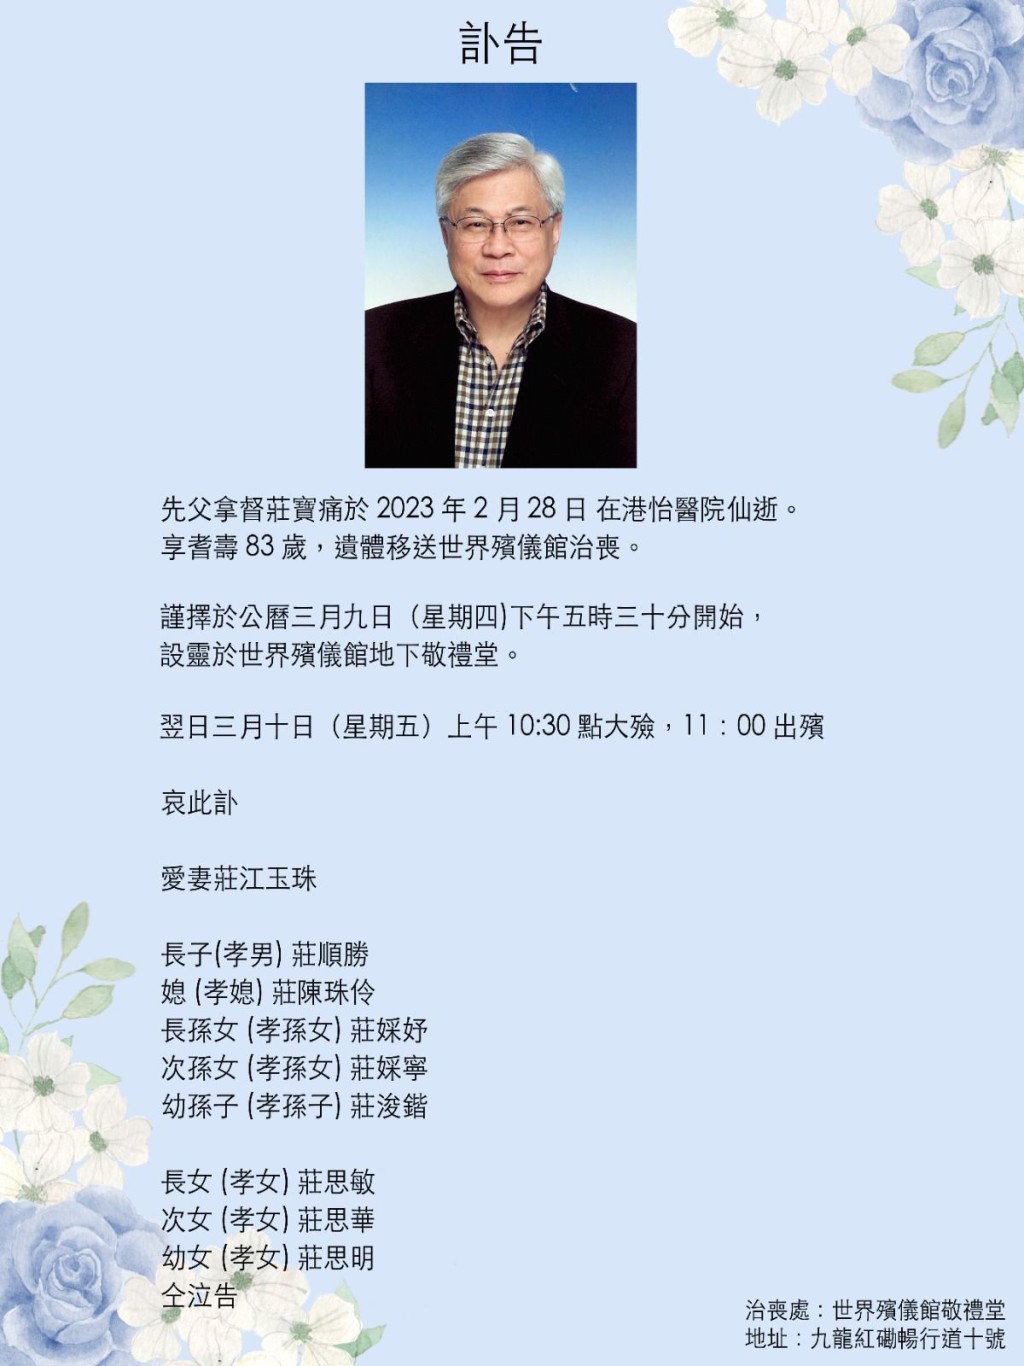 莊鍶敏與莊思明的父親於2月28日離世。